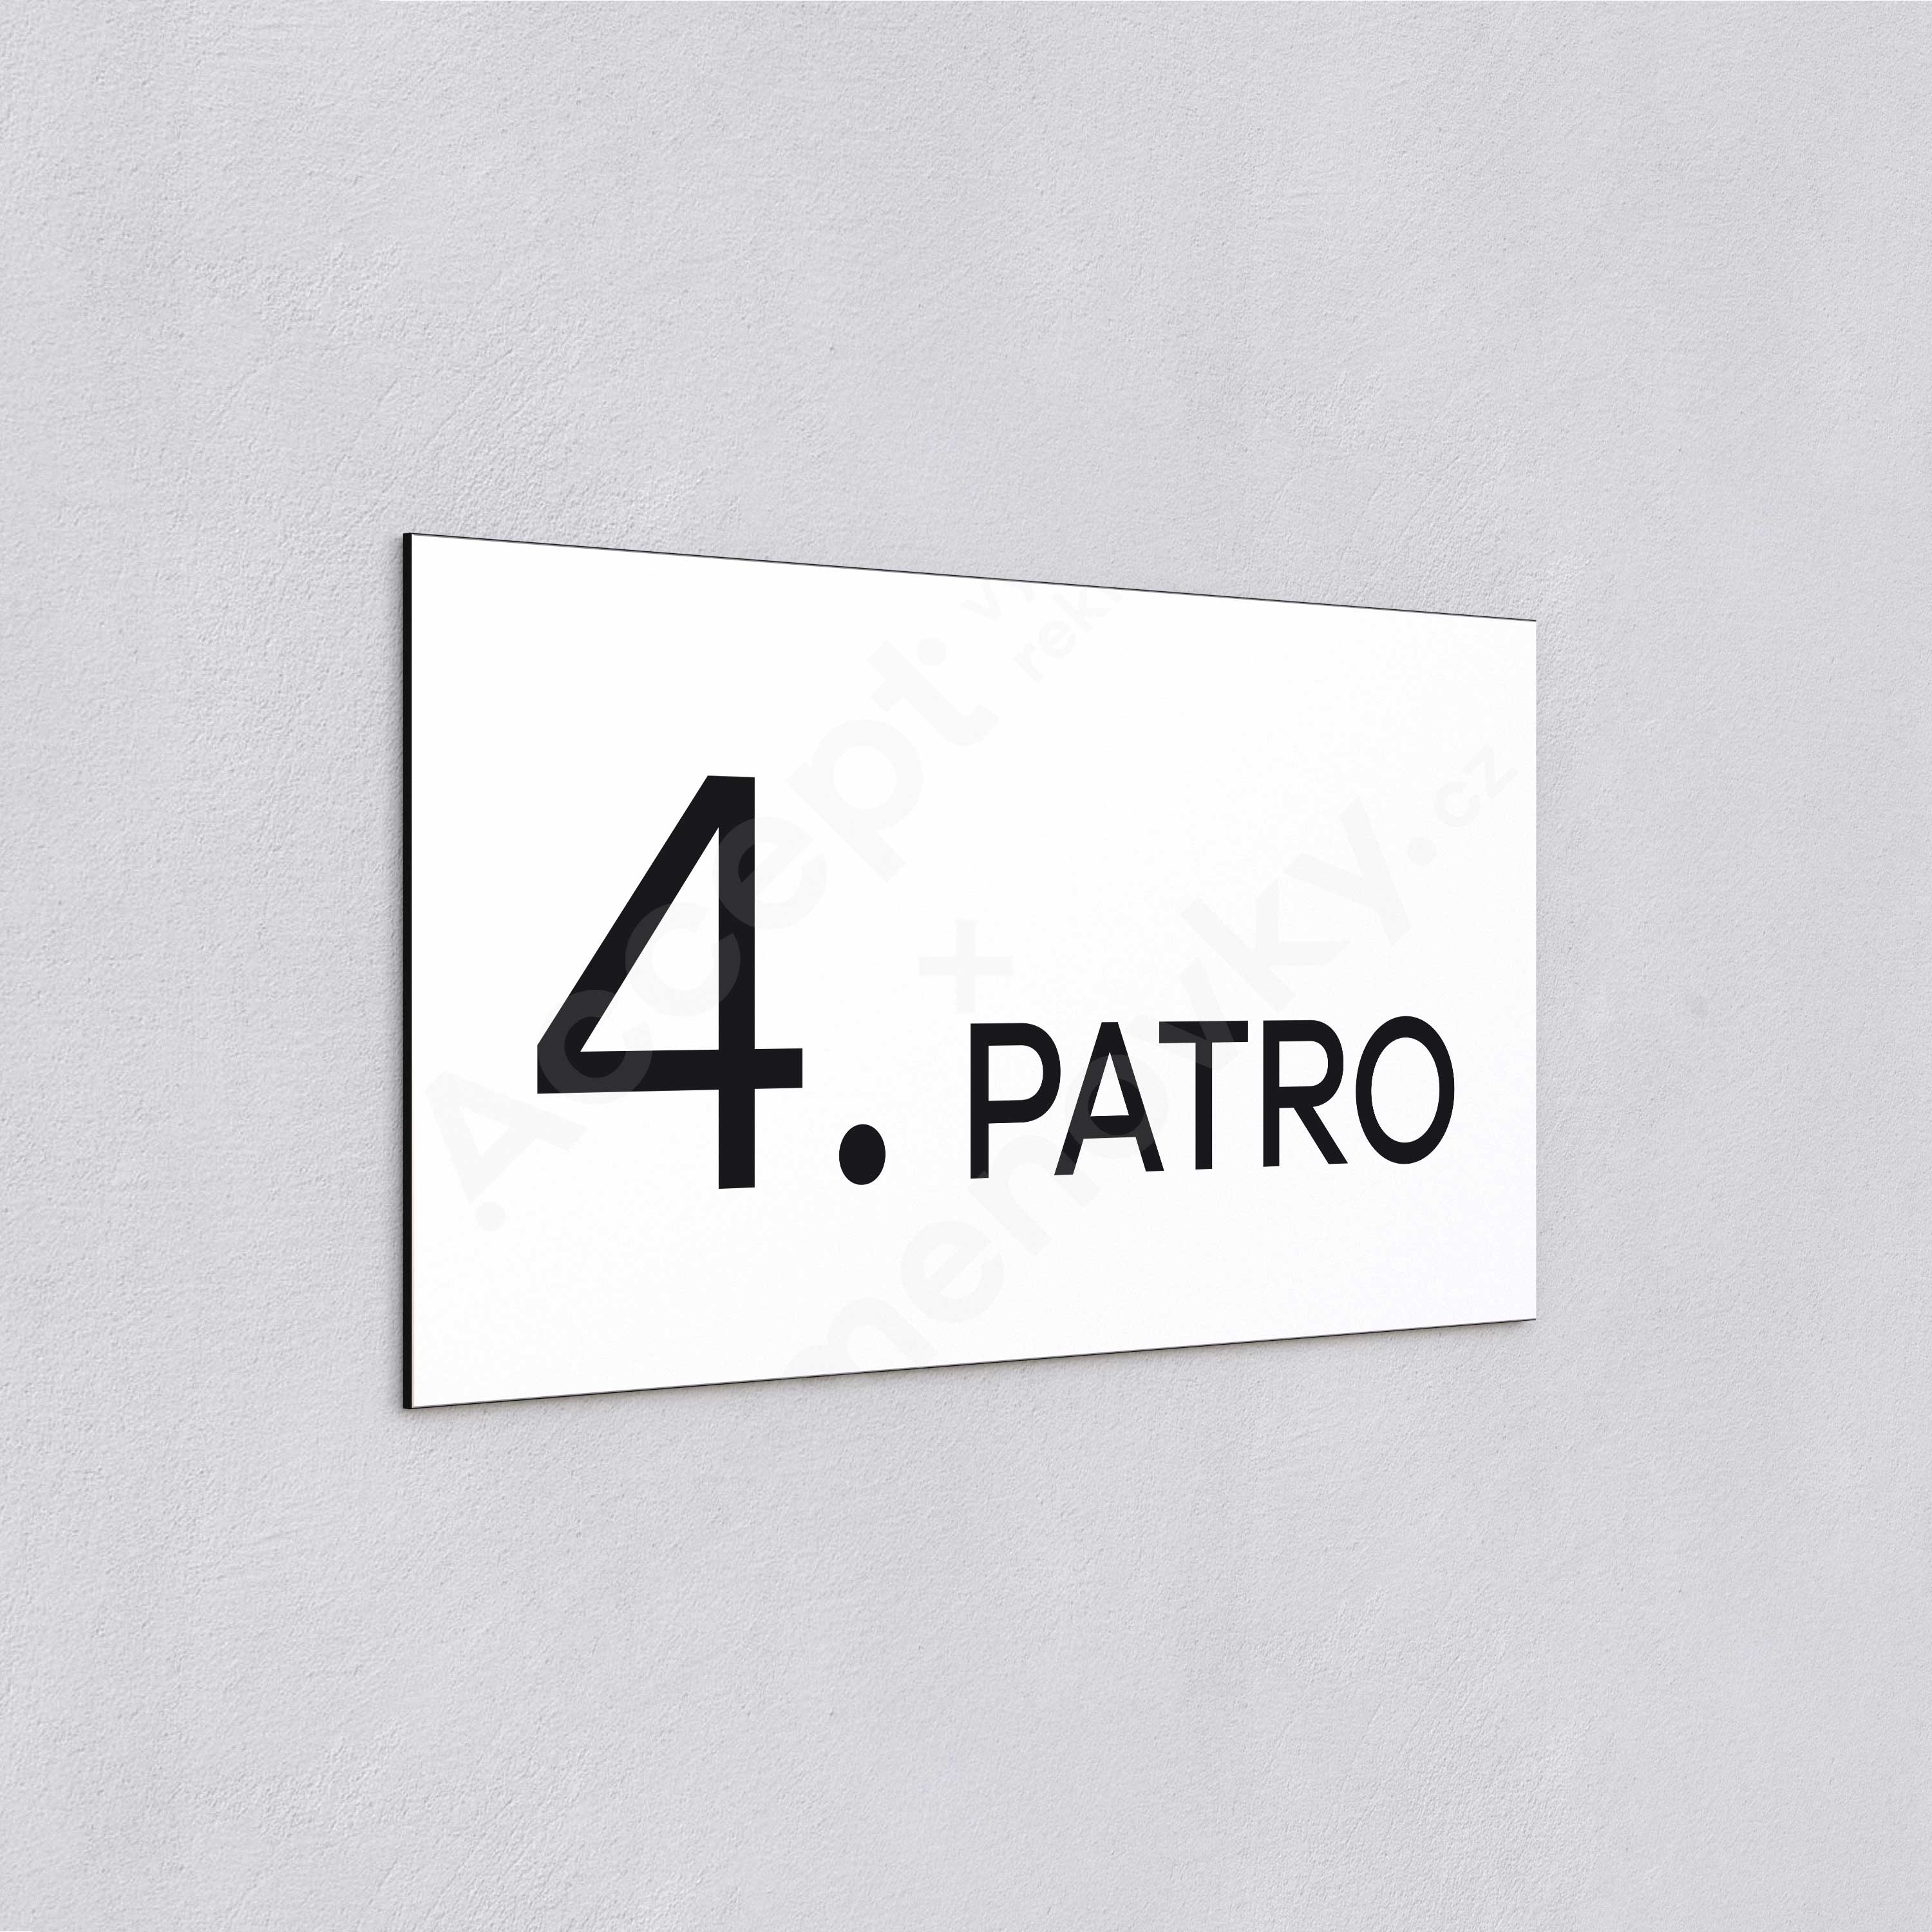 Označení podlaží "4. PATRO" - bílá tabulka - černý popis